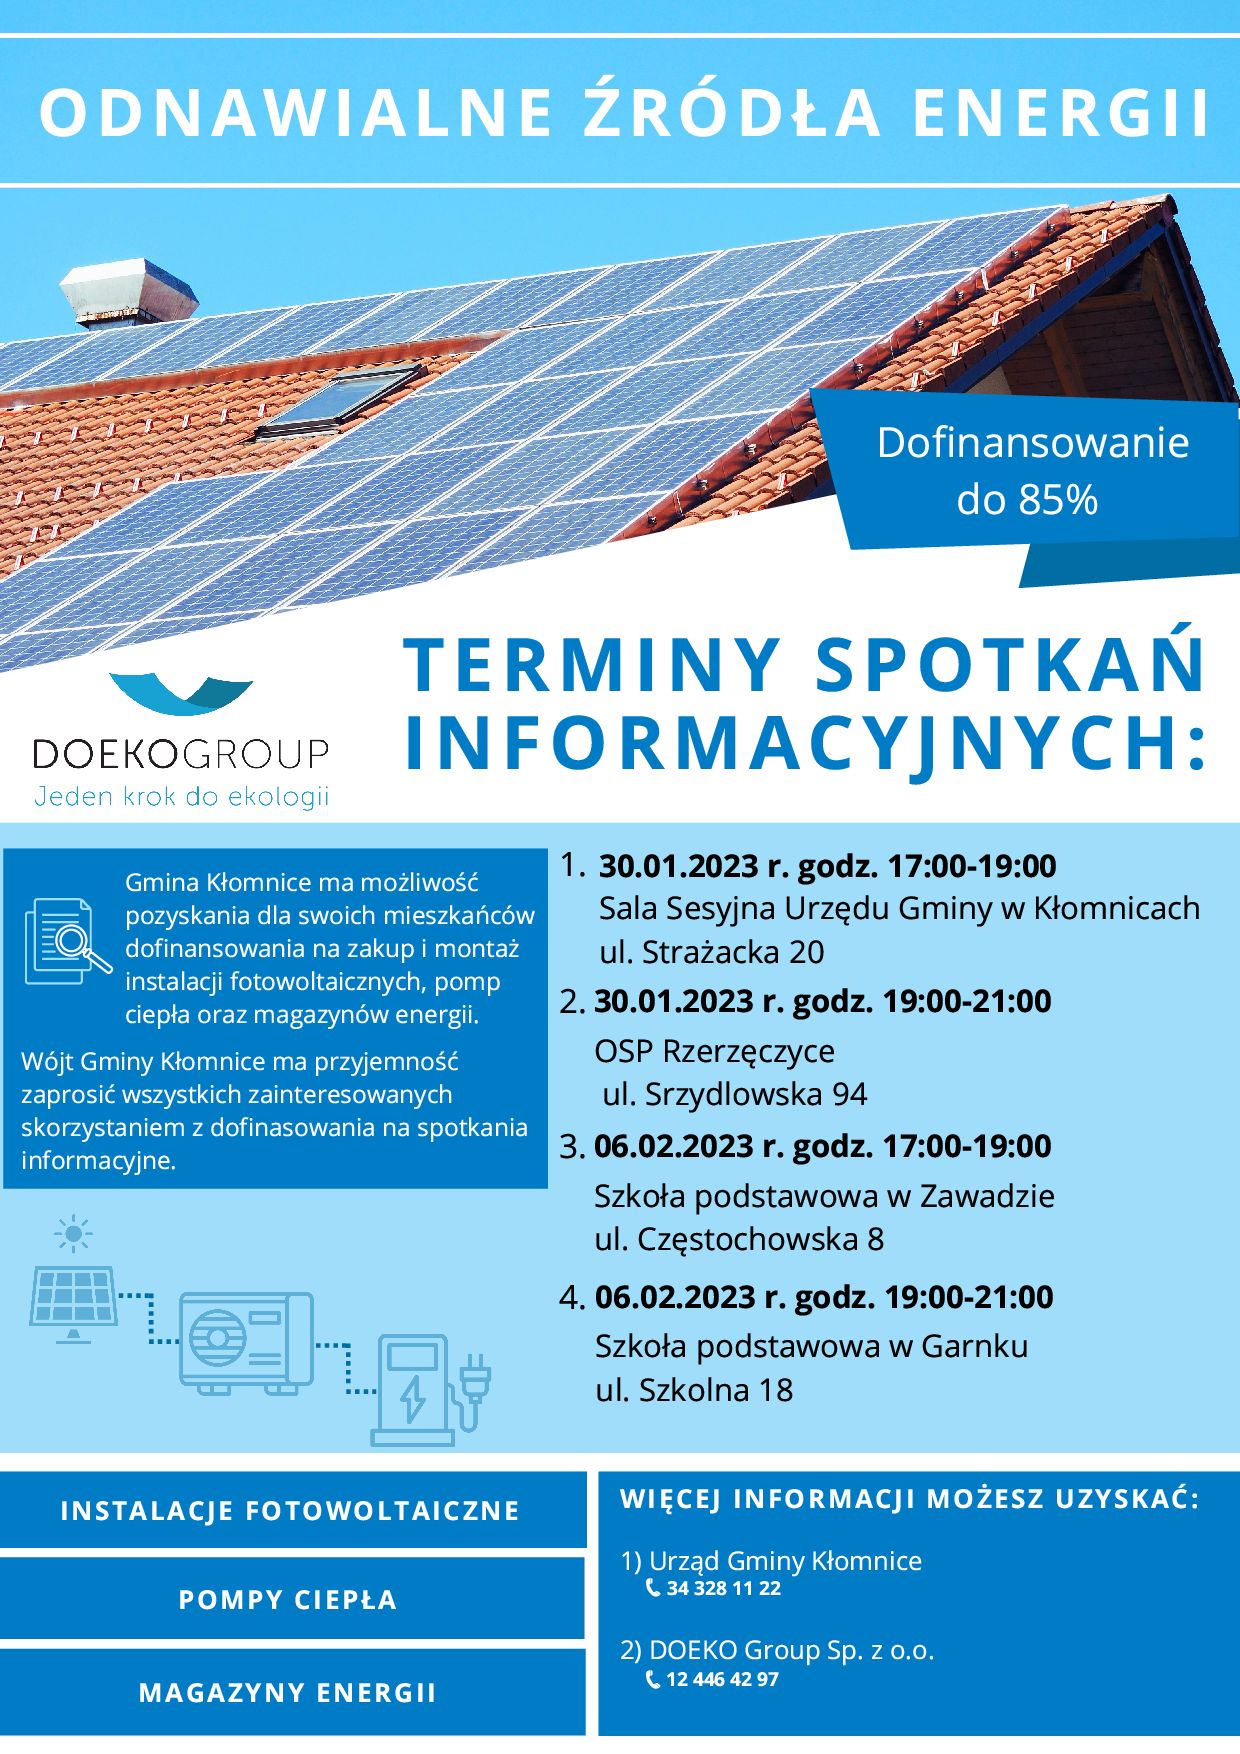 Odnawialne źródła energii - spotkania informacyjne na terenie Gminy Kłomnice